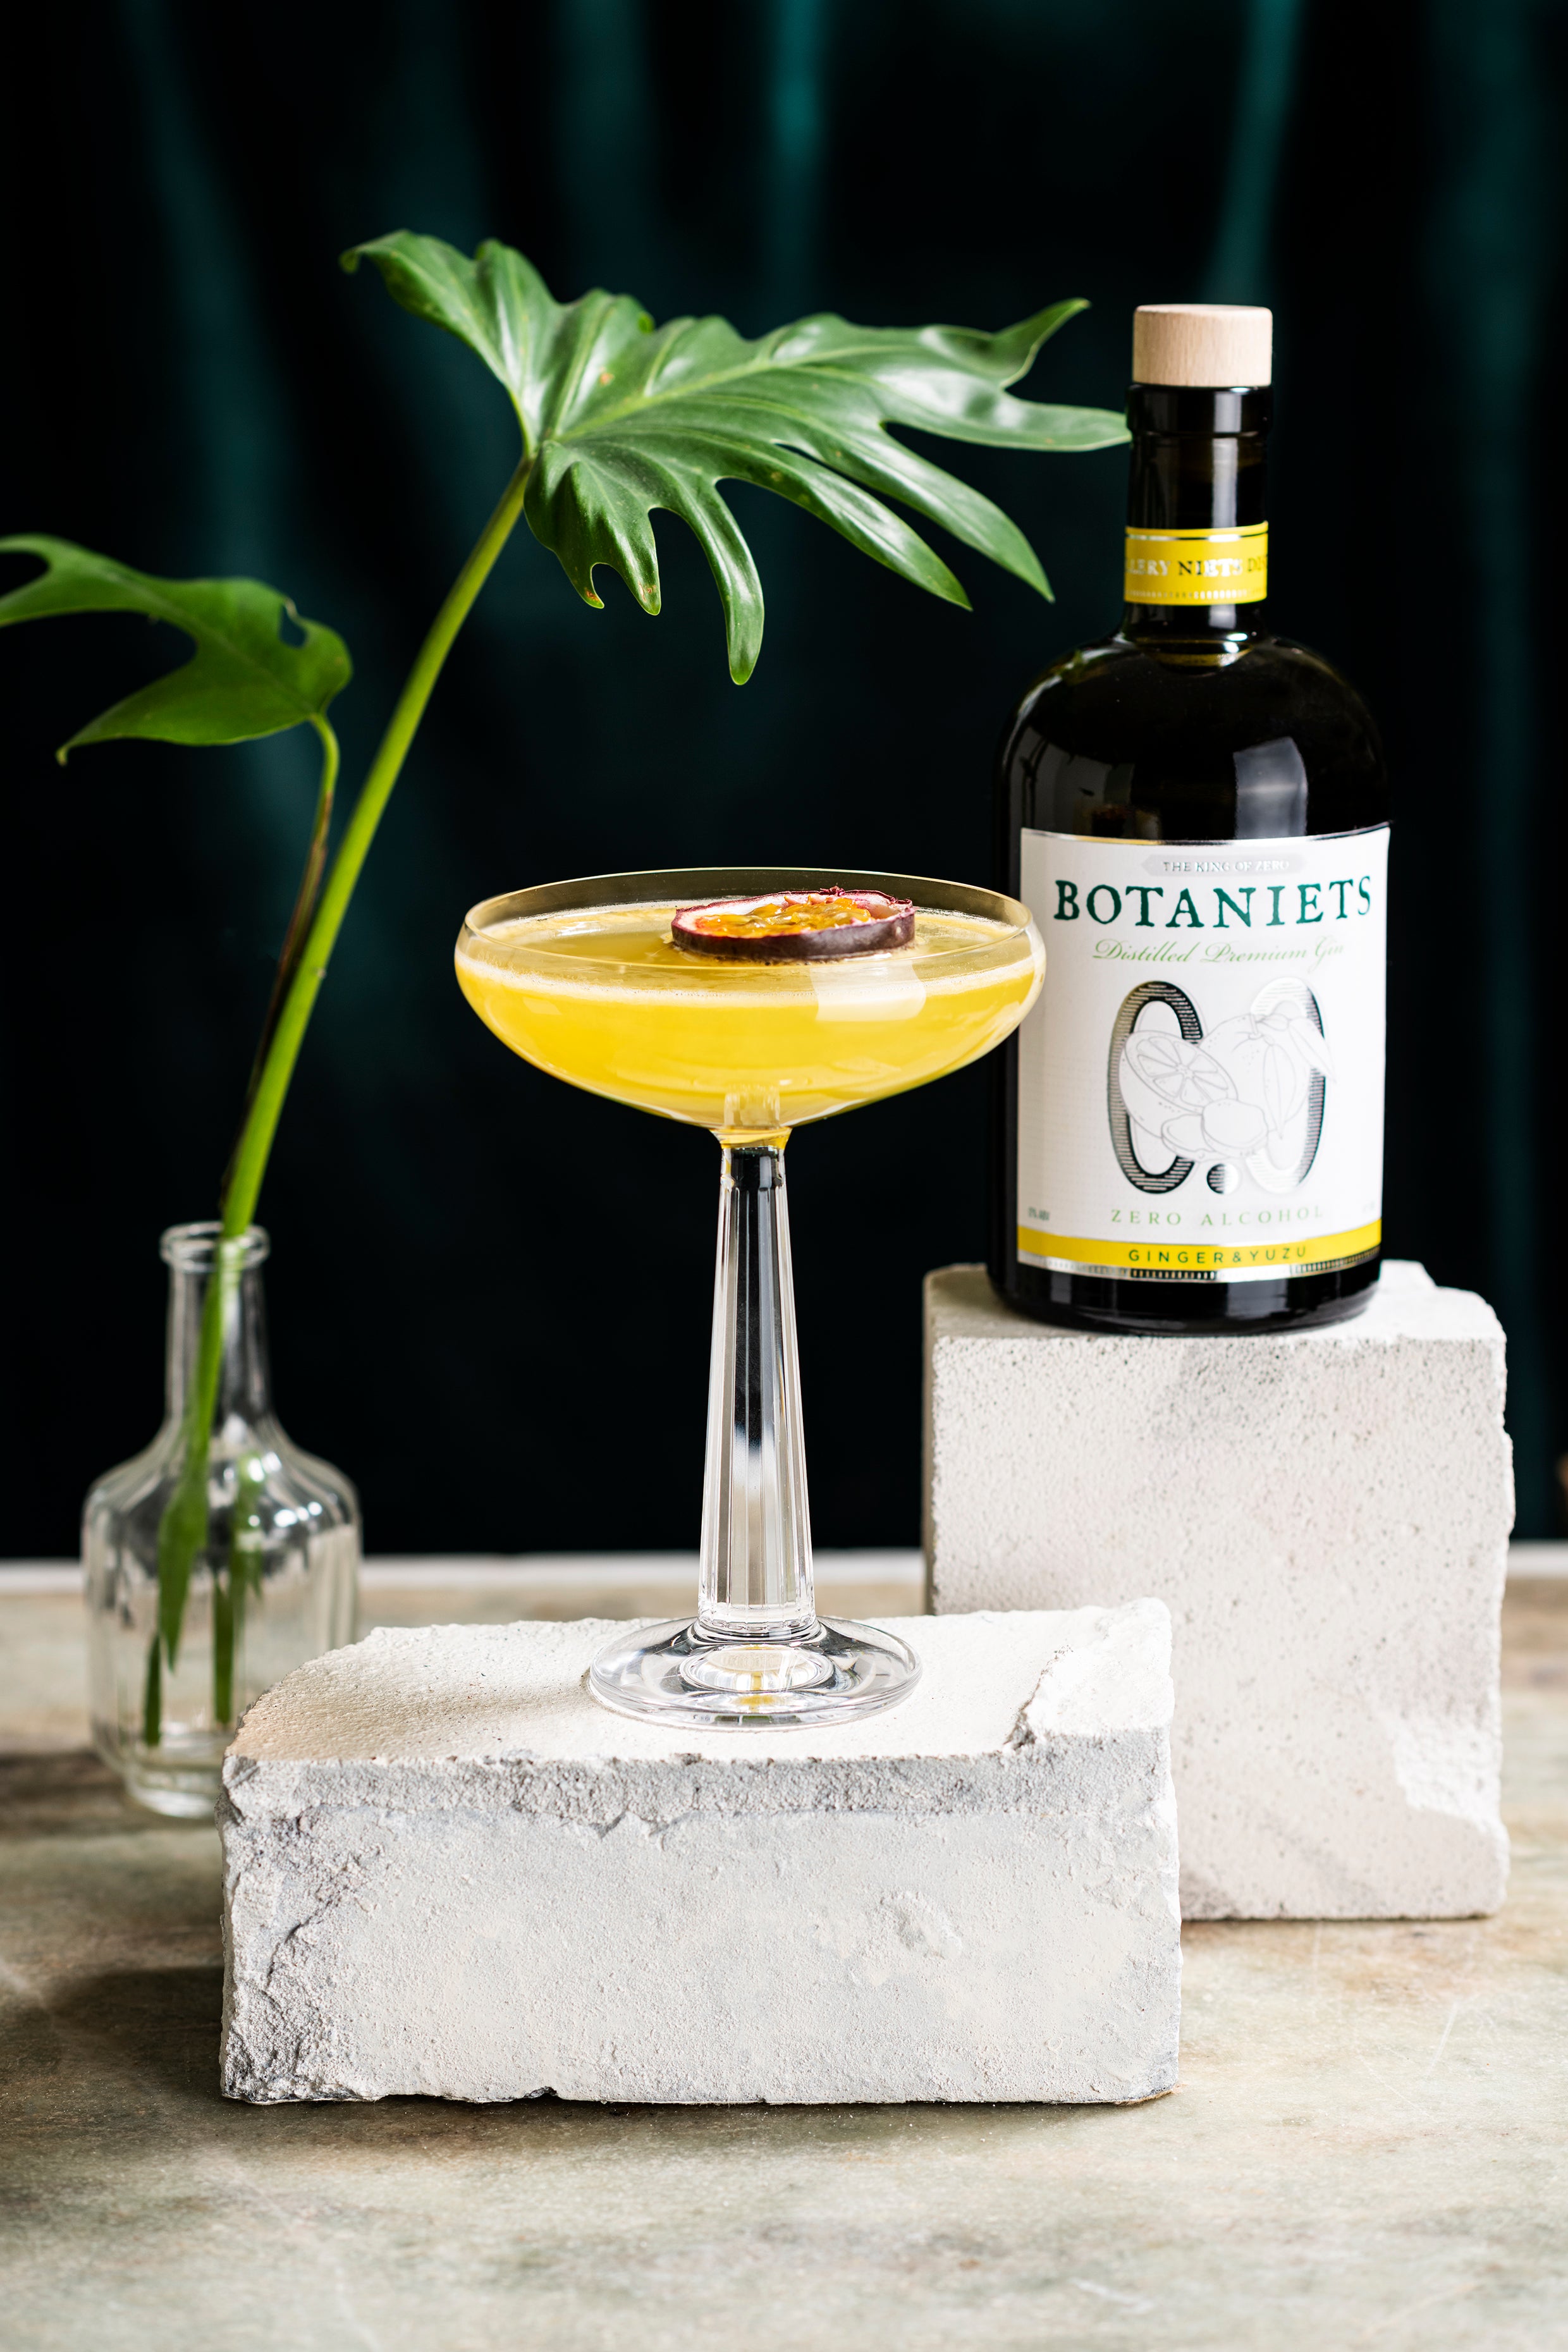 Botaniets Ginger-Yuzu Gin 0.0% cocktail